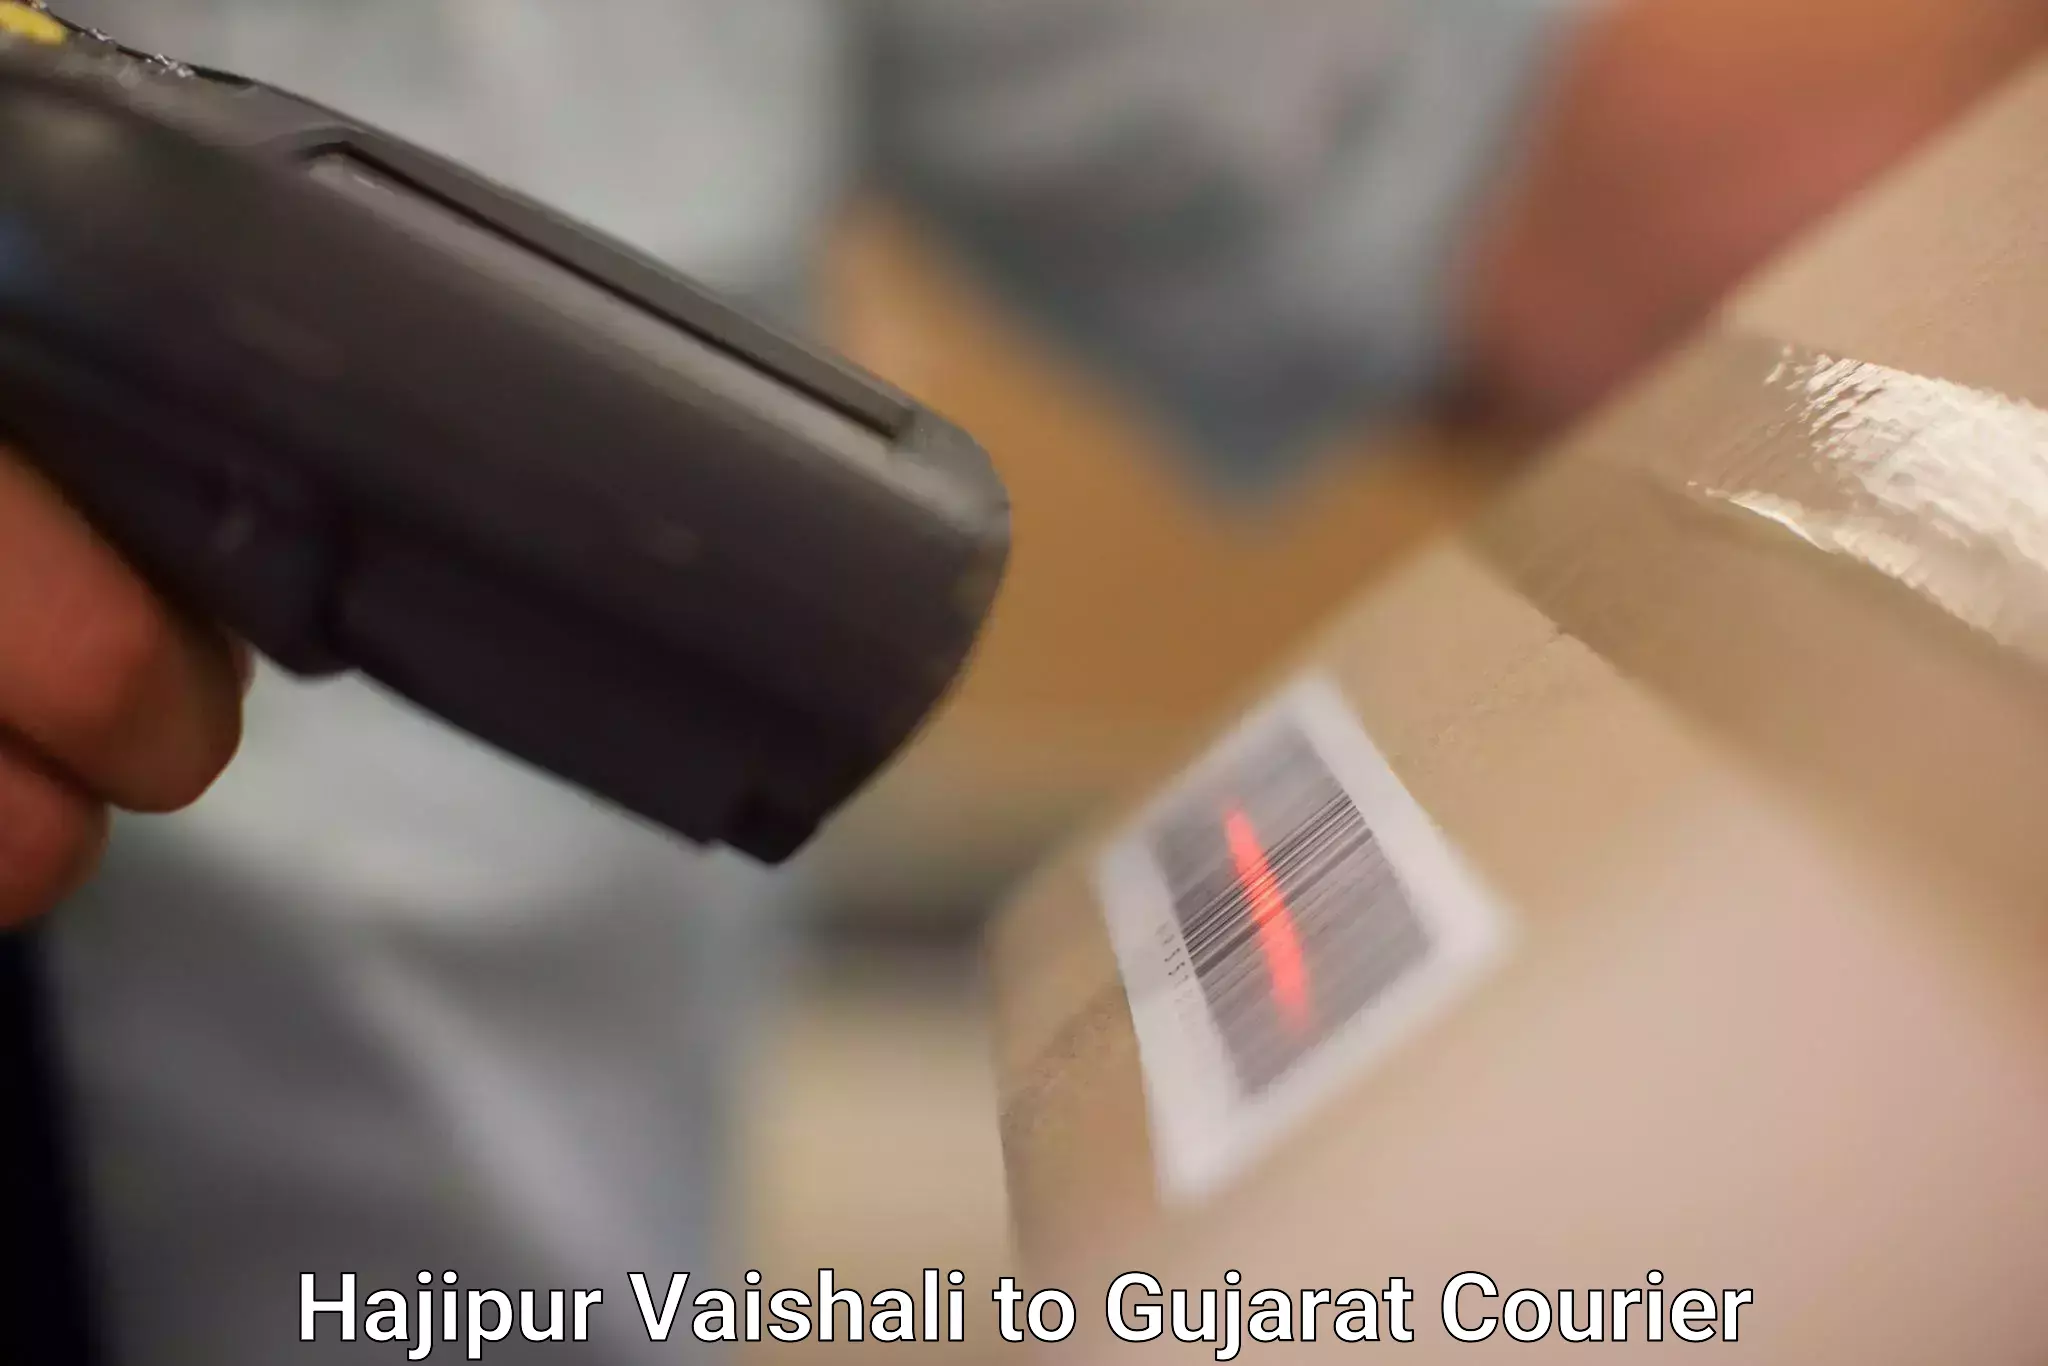 Efficient parcel service Hajipur Vaishali to Karjan